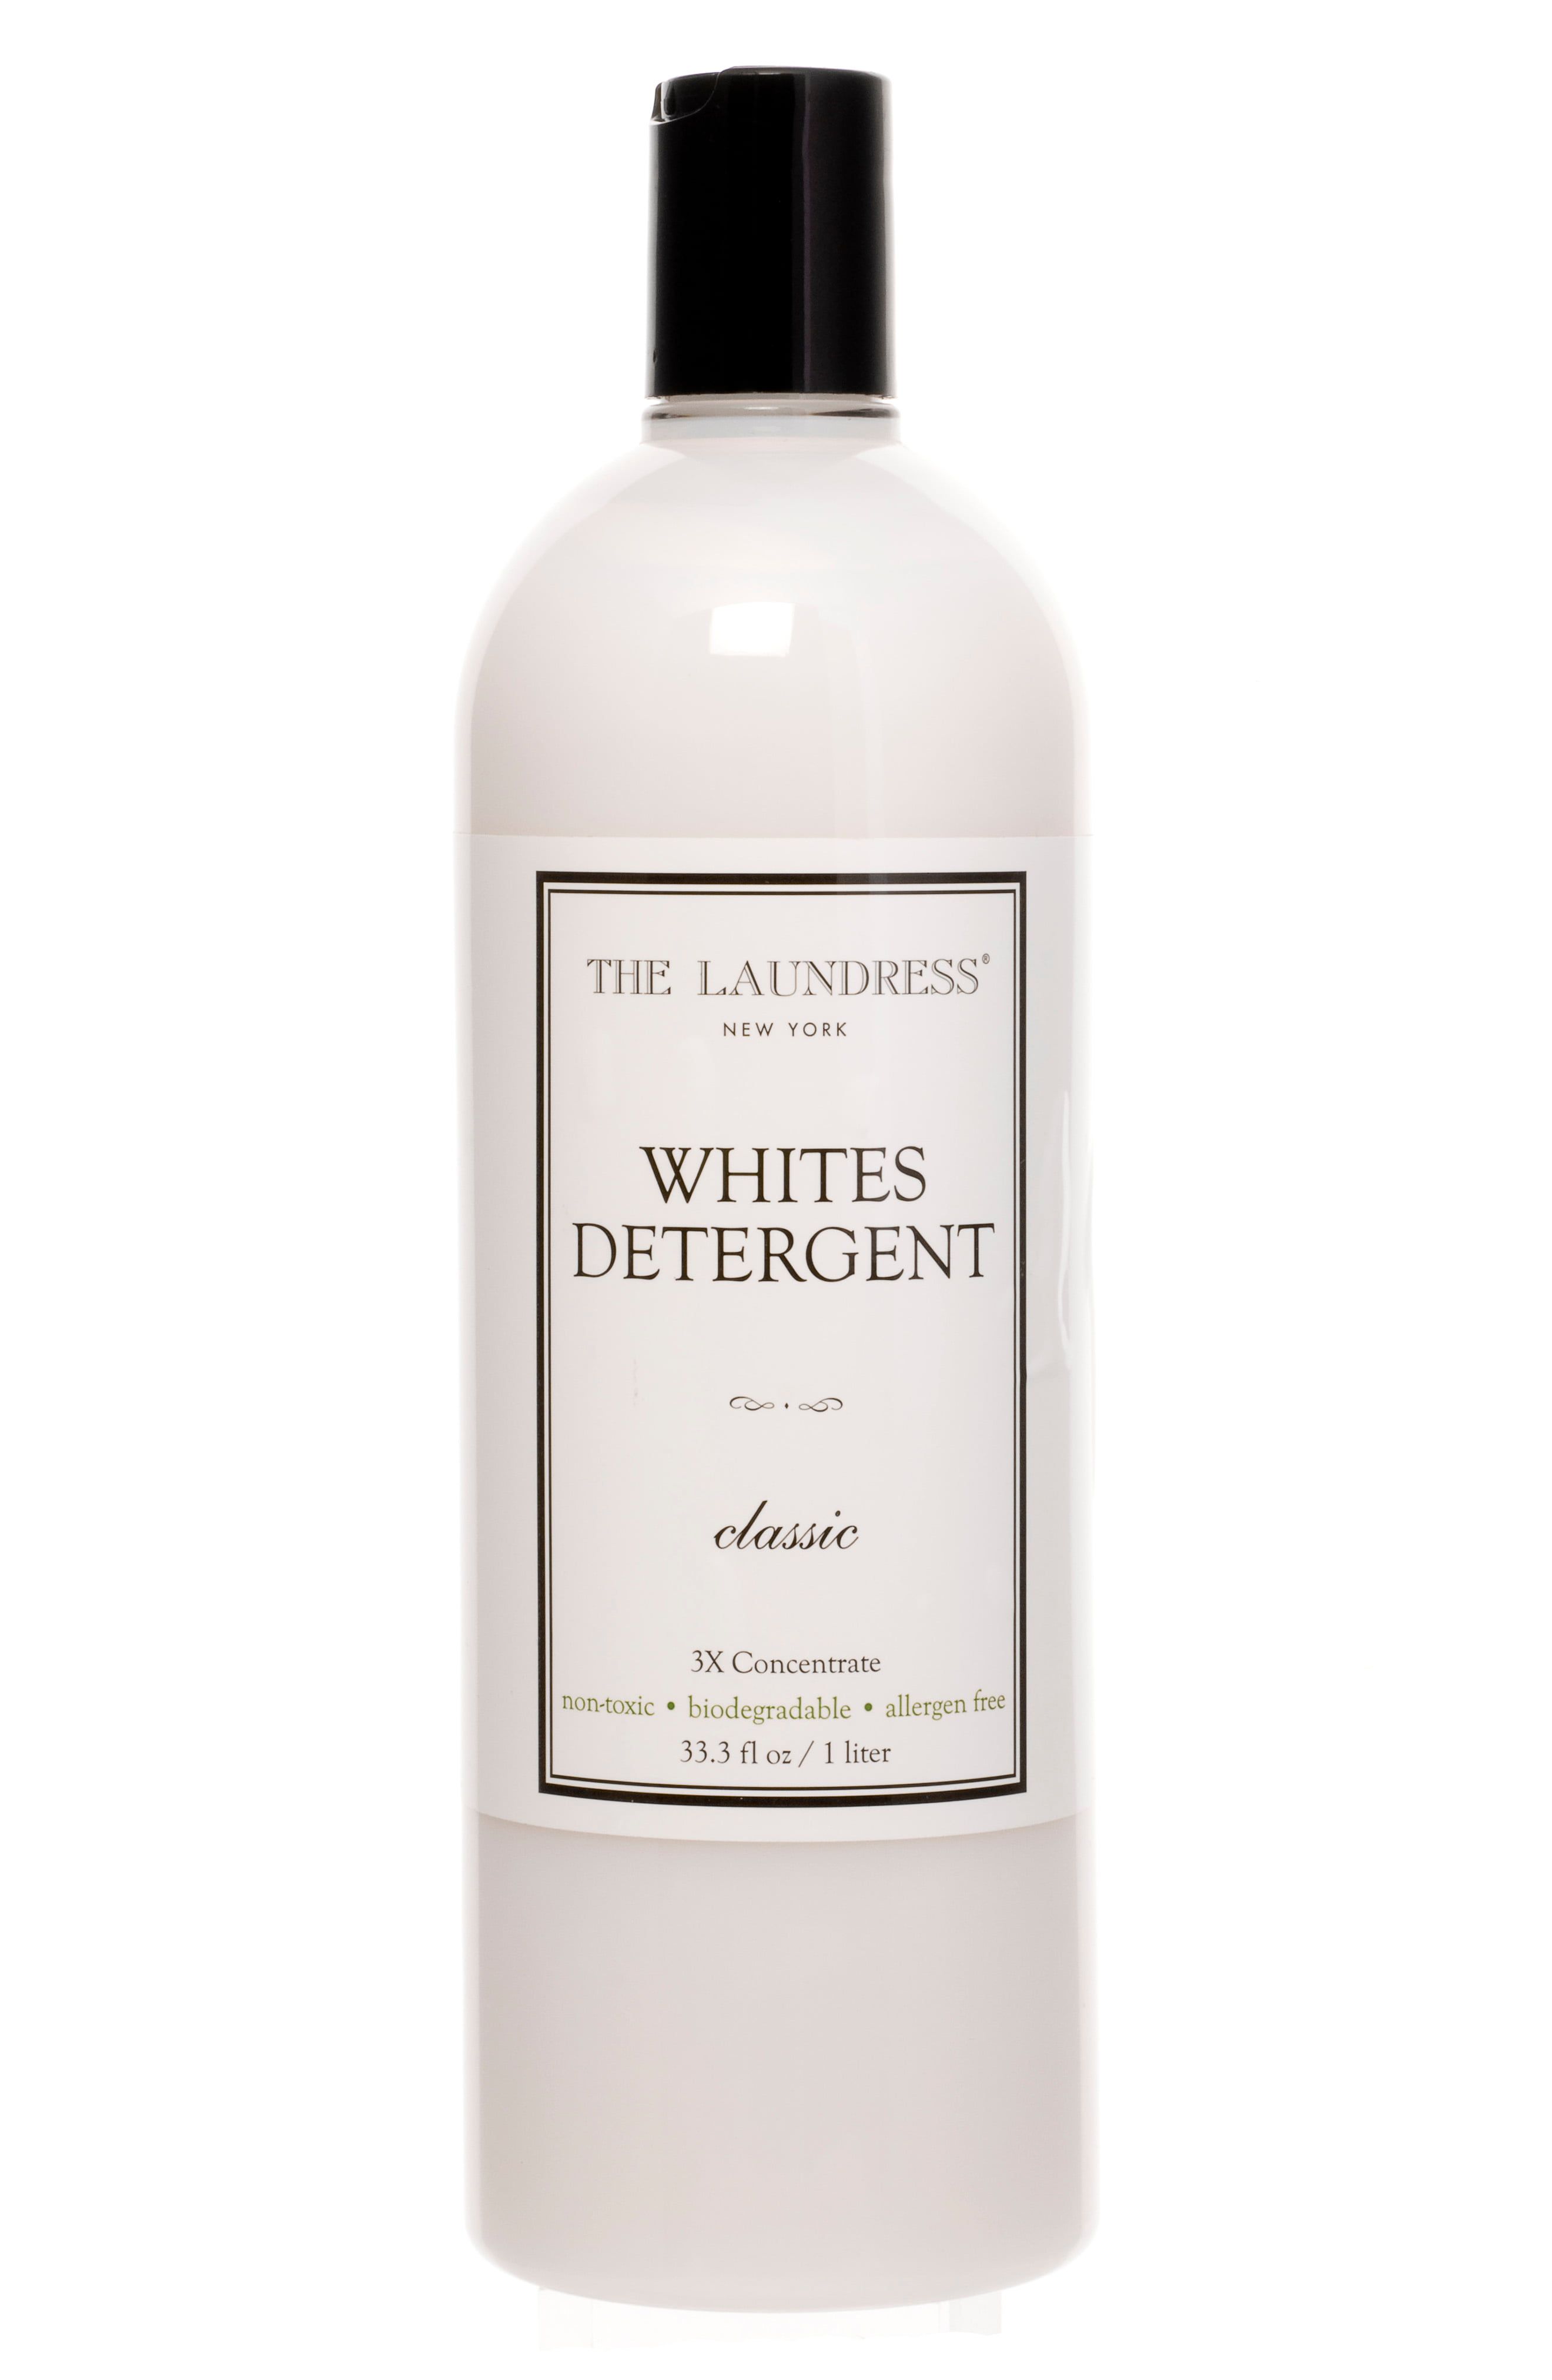 Classic Whites Detergent